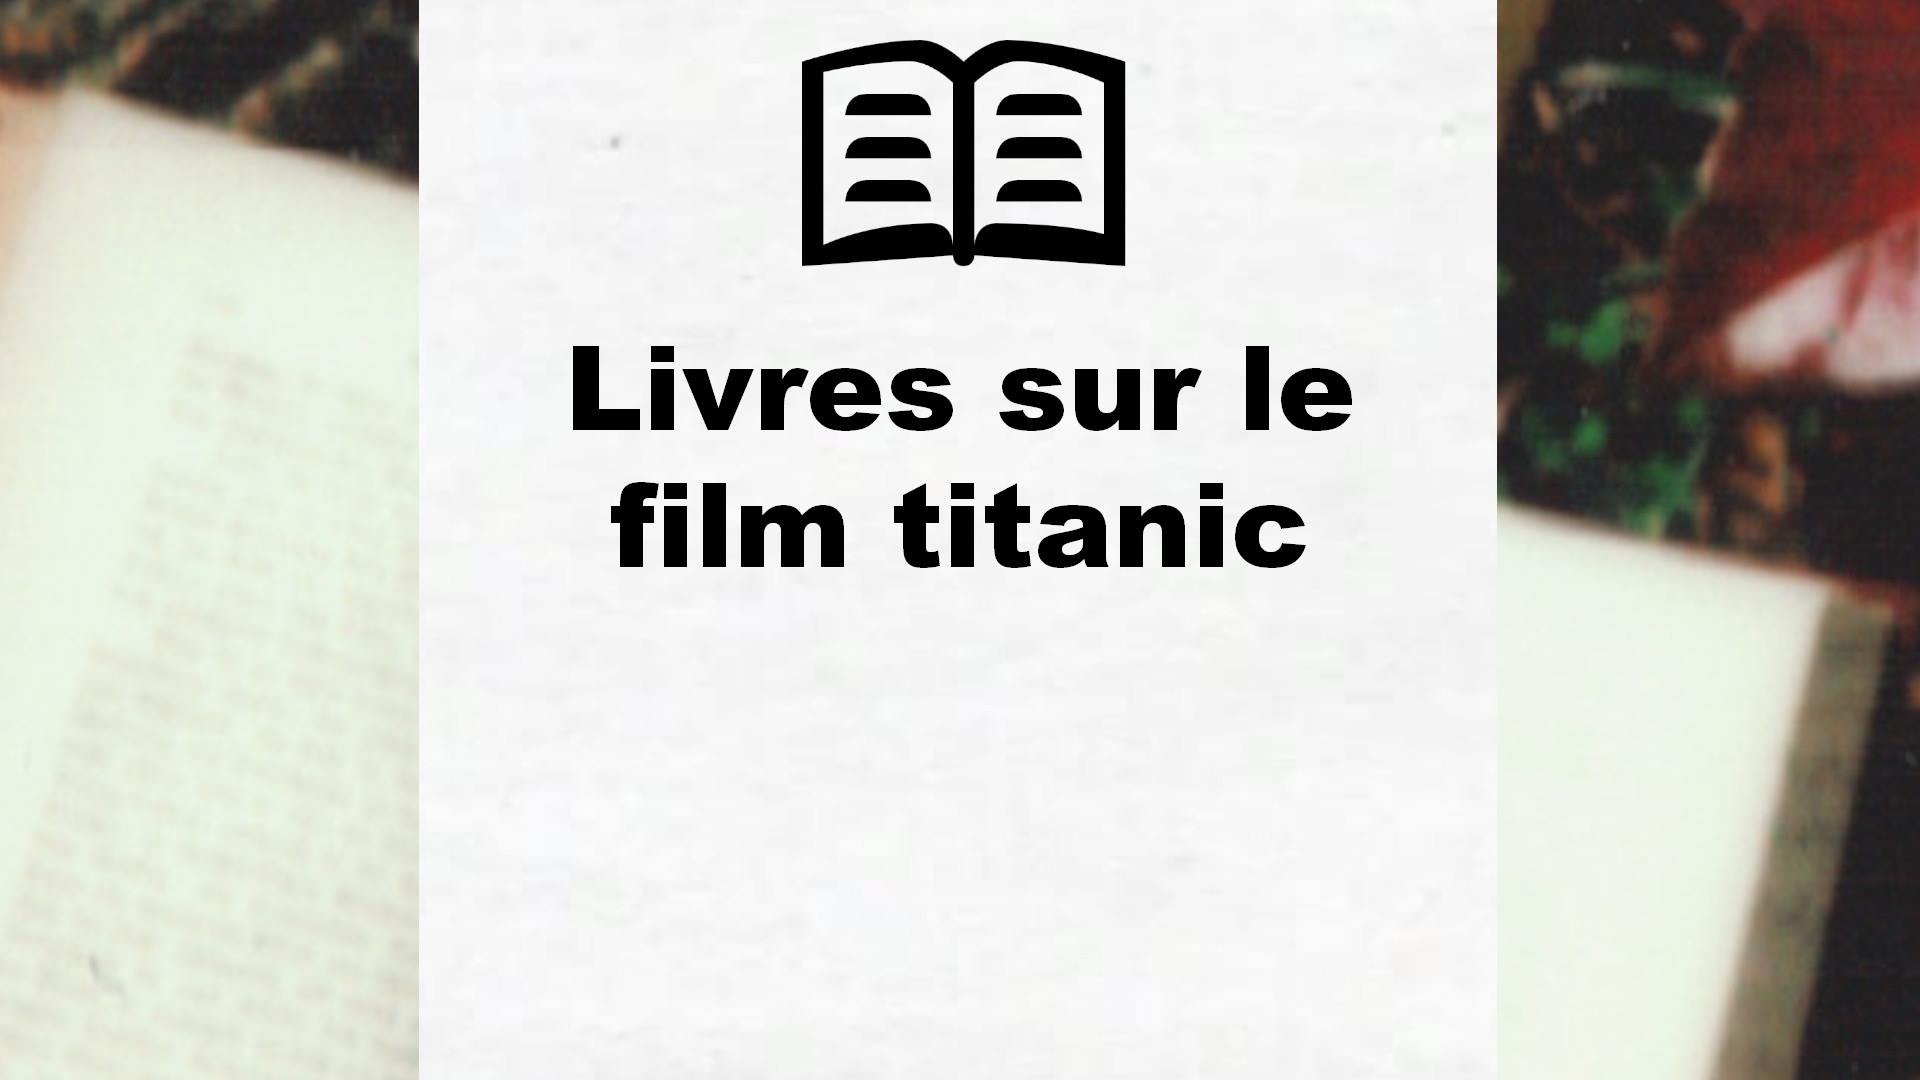 Livres sur le film titanic